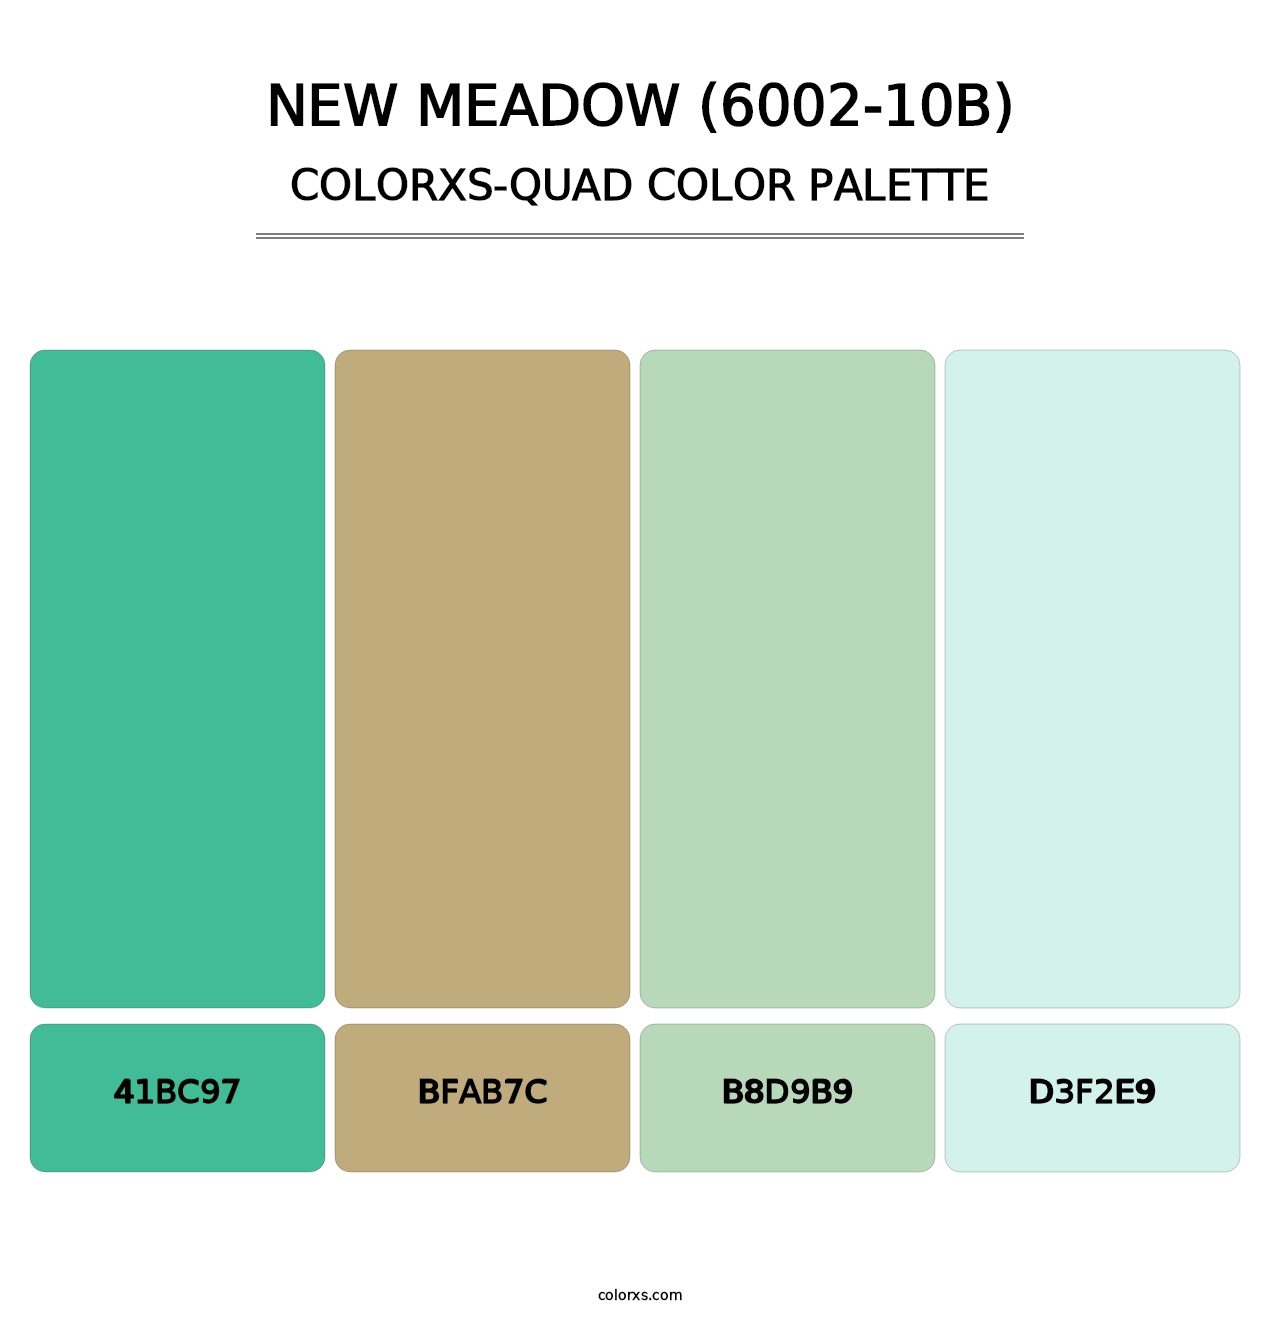 New Meadow (6002-10B) - Colorxs Quad Palette